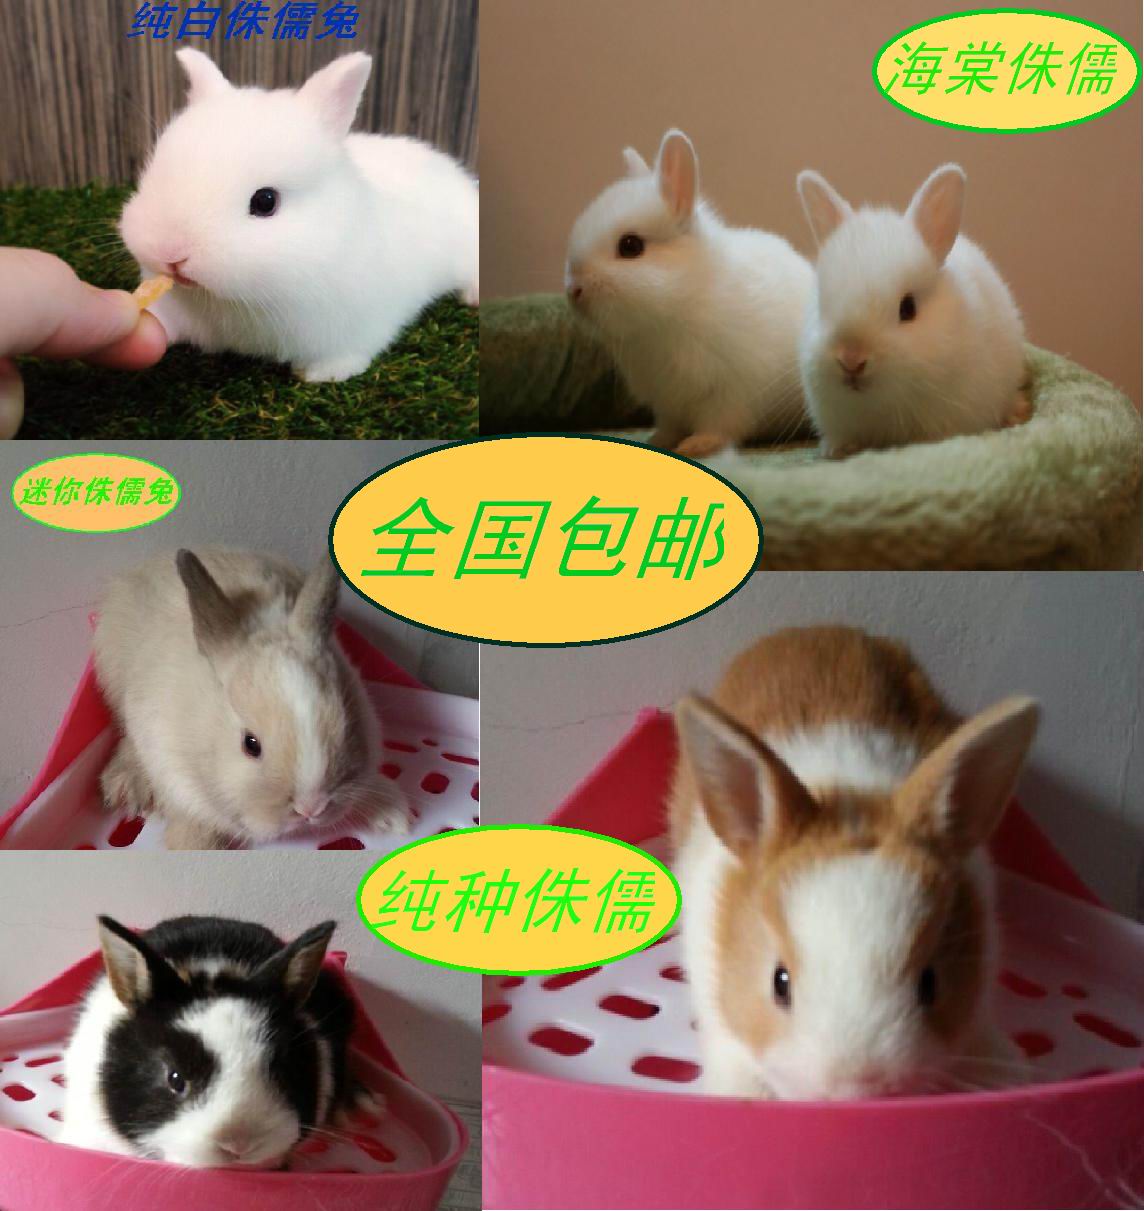 新疆侏儒兔子活体兔宝宝包邮宠物兔子活体凤眼西施兔海棠兔侏儒兔